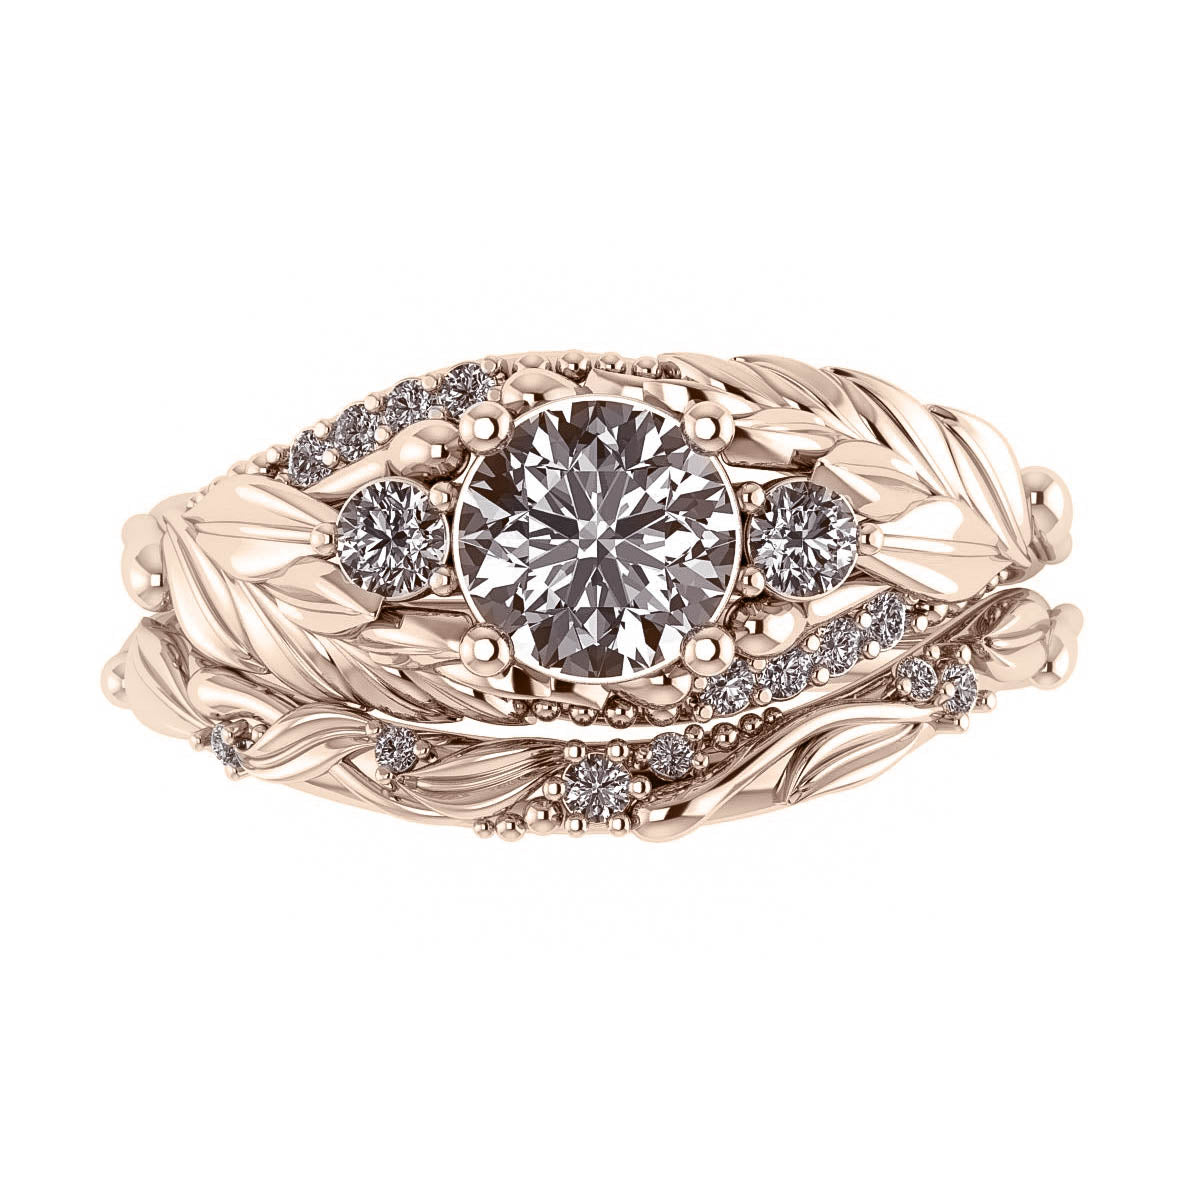 Verdi | custom bridal ring set with round cut gemstone 6 mm - Eden Garden Jewelry™